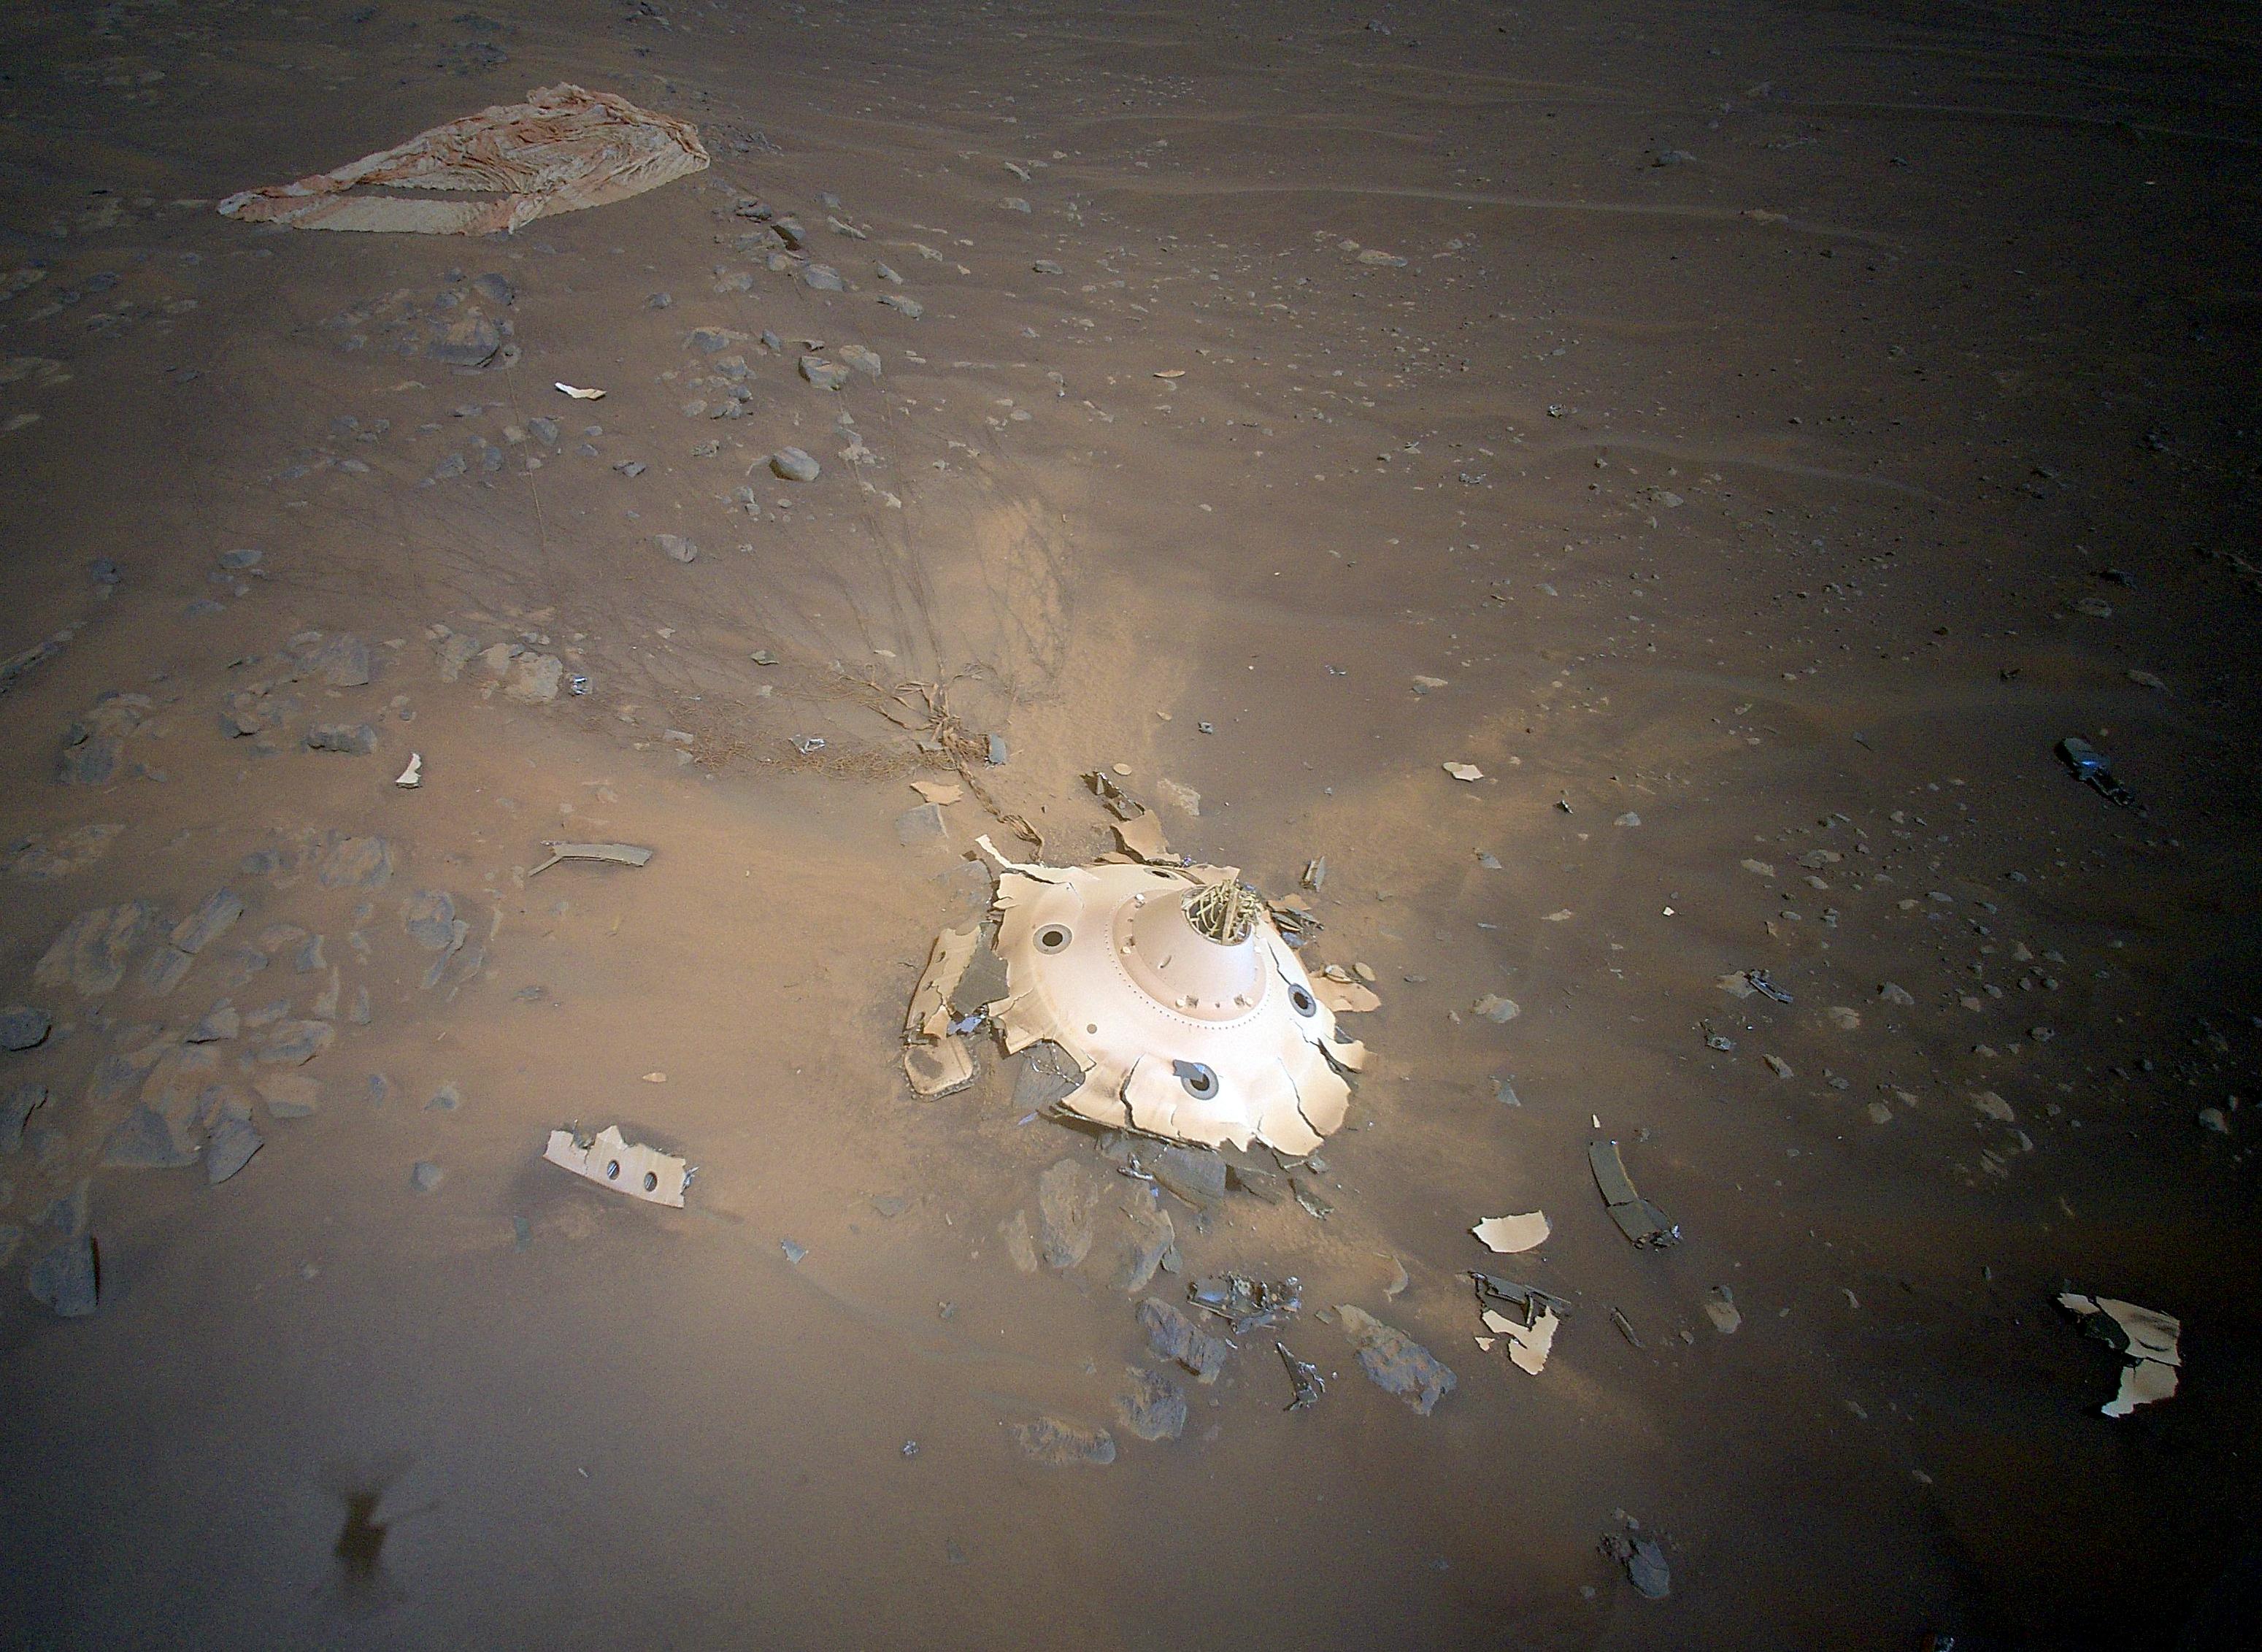 Розбитий захисний кожух із парашутом на поверхні Марсу